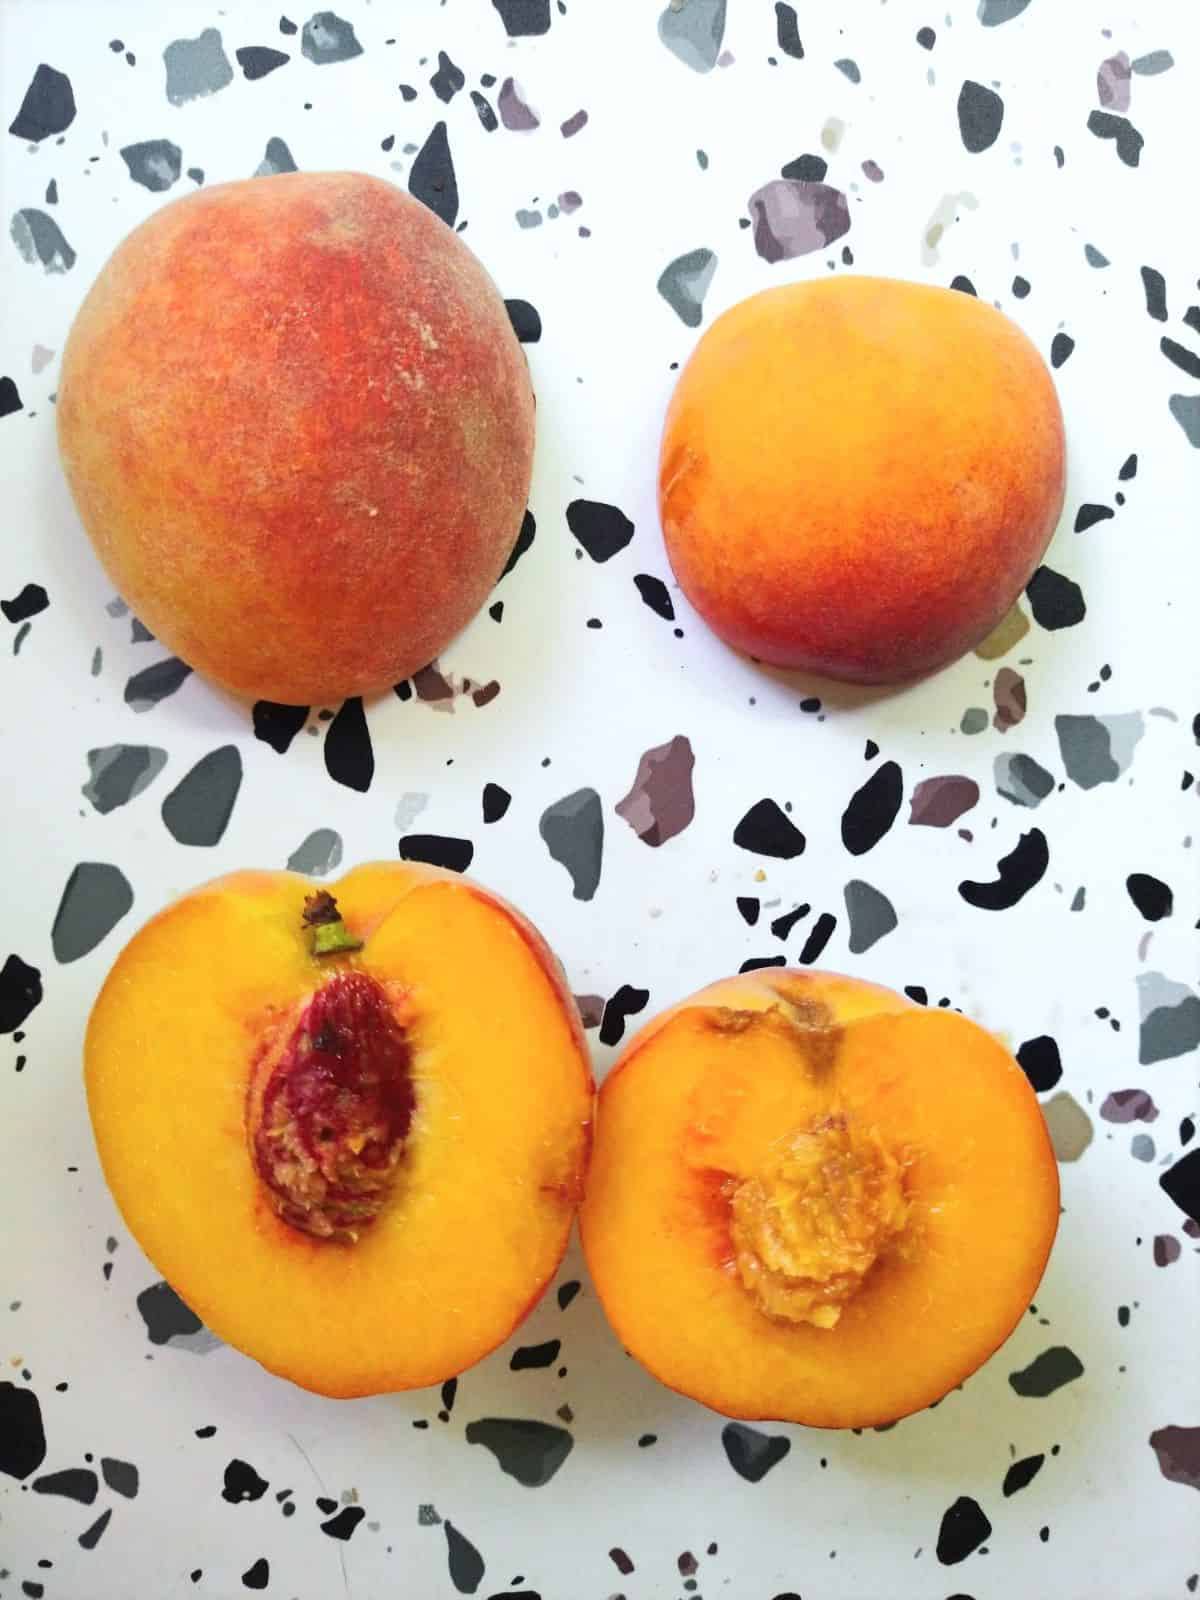 Freestone and clingstone peaches cut in half. 